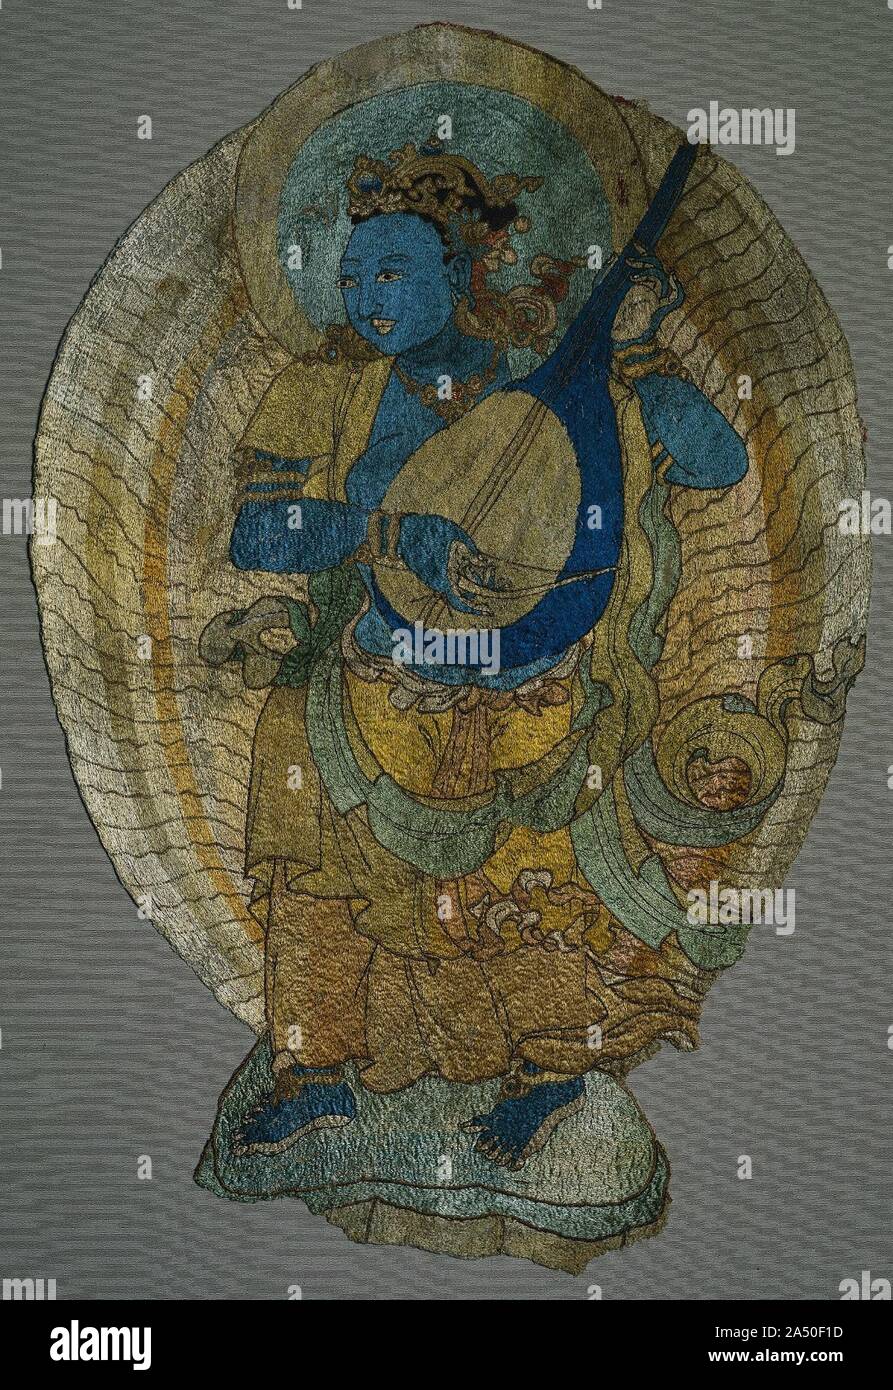 Himmlische Musiker, 1300. Obwohl eine Reihe von Buddhistischen Textilien in den sino-tibetischen Stil produziert überleben, Zentralasiatischen Stickereien aus der gleichen Periode sind äußerst selten. Hier, eine Göttin stehend auf einem Lotus Support und Spielen eines verbeugte sich laute kann die Personifizierung der Sinn des Hörens. Im Buddhismus, die fünf Sinne waren vertreten, als weibliche Gottheiten, die jeweils eine andere Farbe (in diesem Fall, blau). Der Stil der Figur, ihre Haare, die Form ihrer Krone, die nervös gekräuselten saum, das Scrolling Schals, und der Regenbogen Halo mit Strahlen sind Zentralasiatischen. Diese Zahl wurde ursprünglich Par Stockfoto